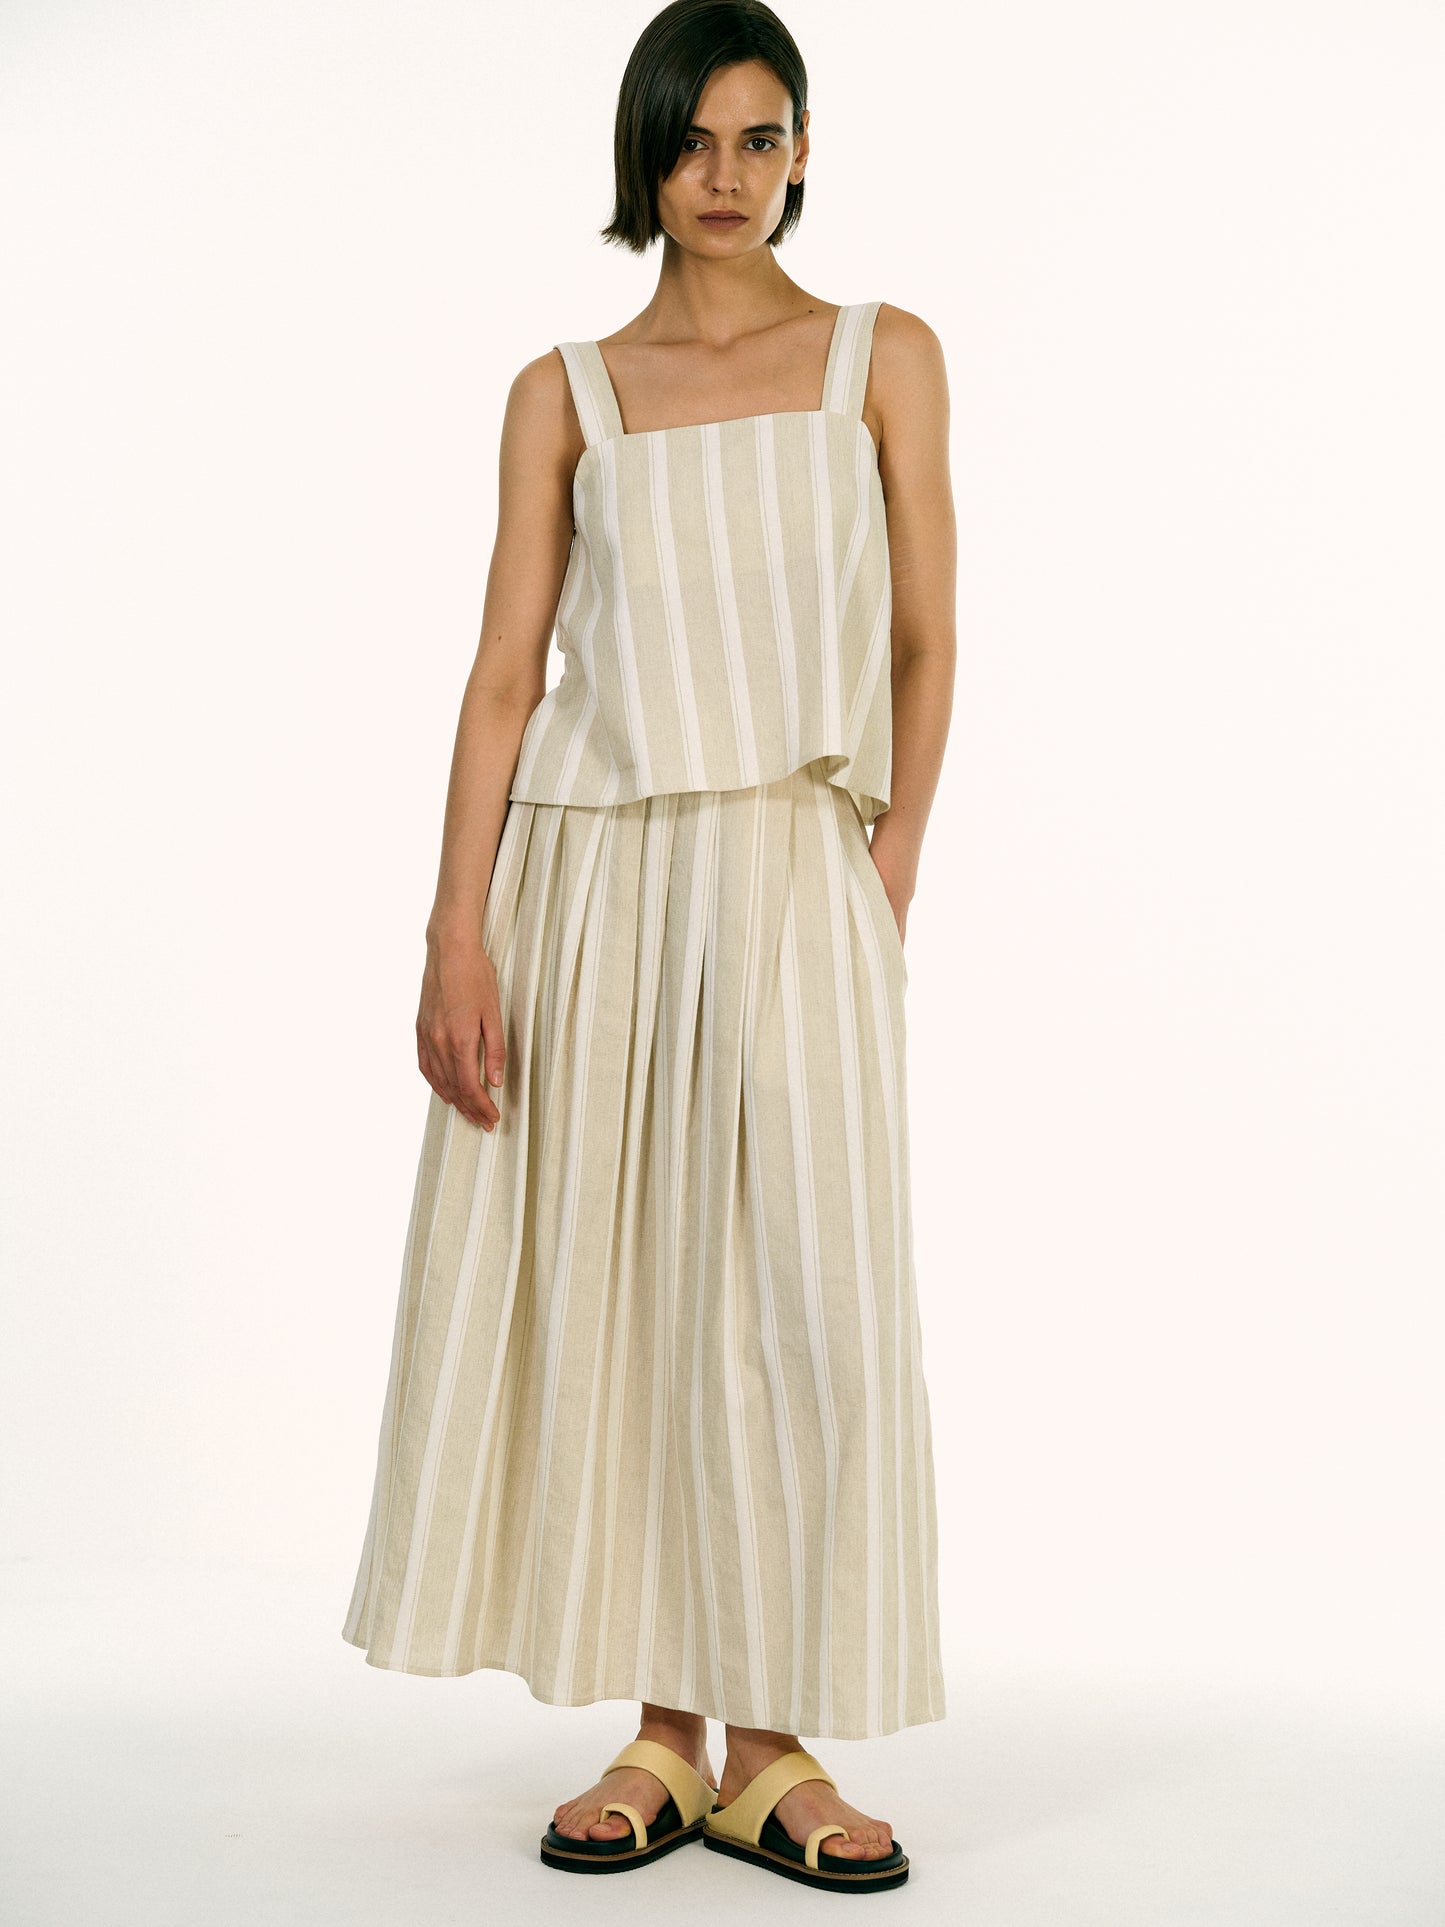 Linen Pleat Skirt, Sand Stripe